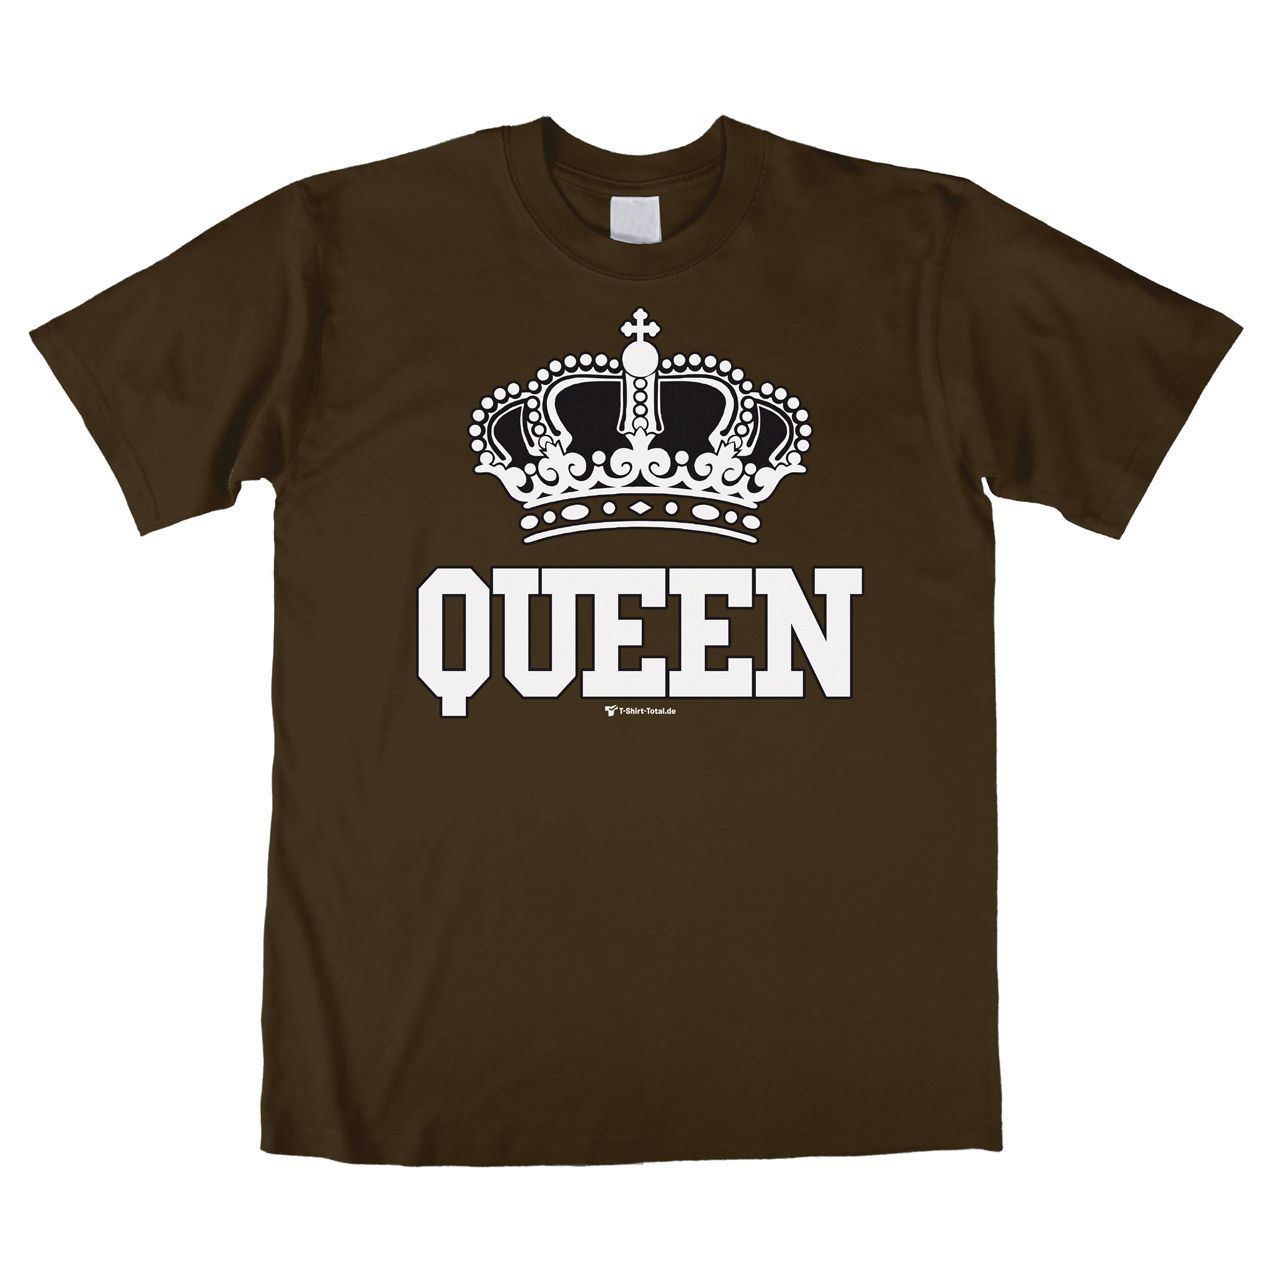 Queen Unisex T-Shirt braun Medium